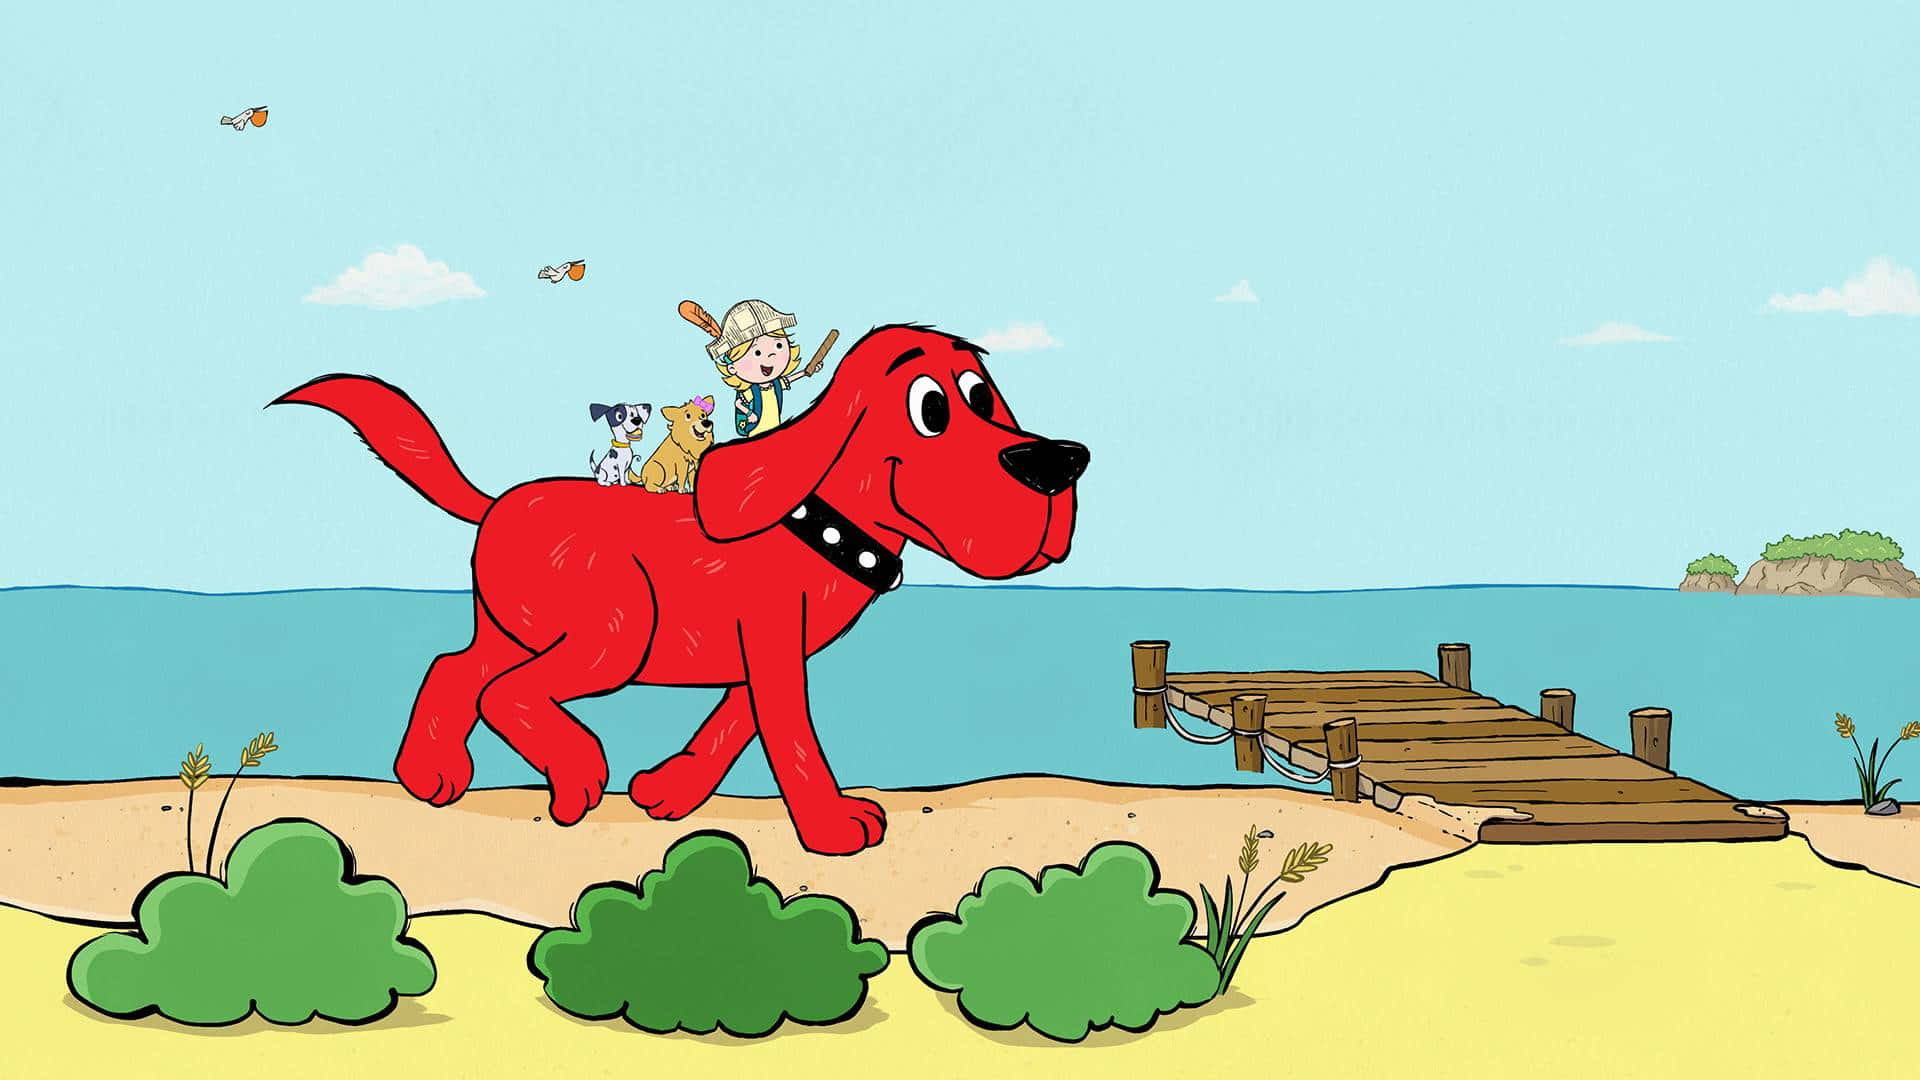 Onosso Amado Clifford, O Cãozinho Vermelho Gigante, Está Sempre Aqui Para Espalhar Alegria E Amizade!